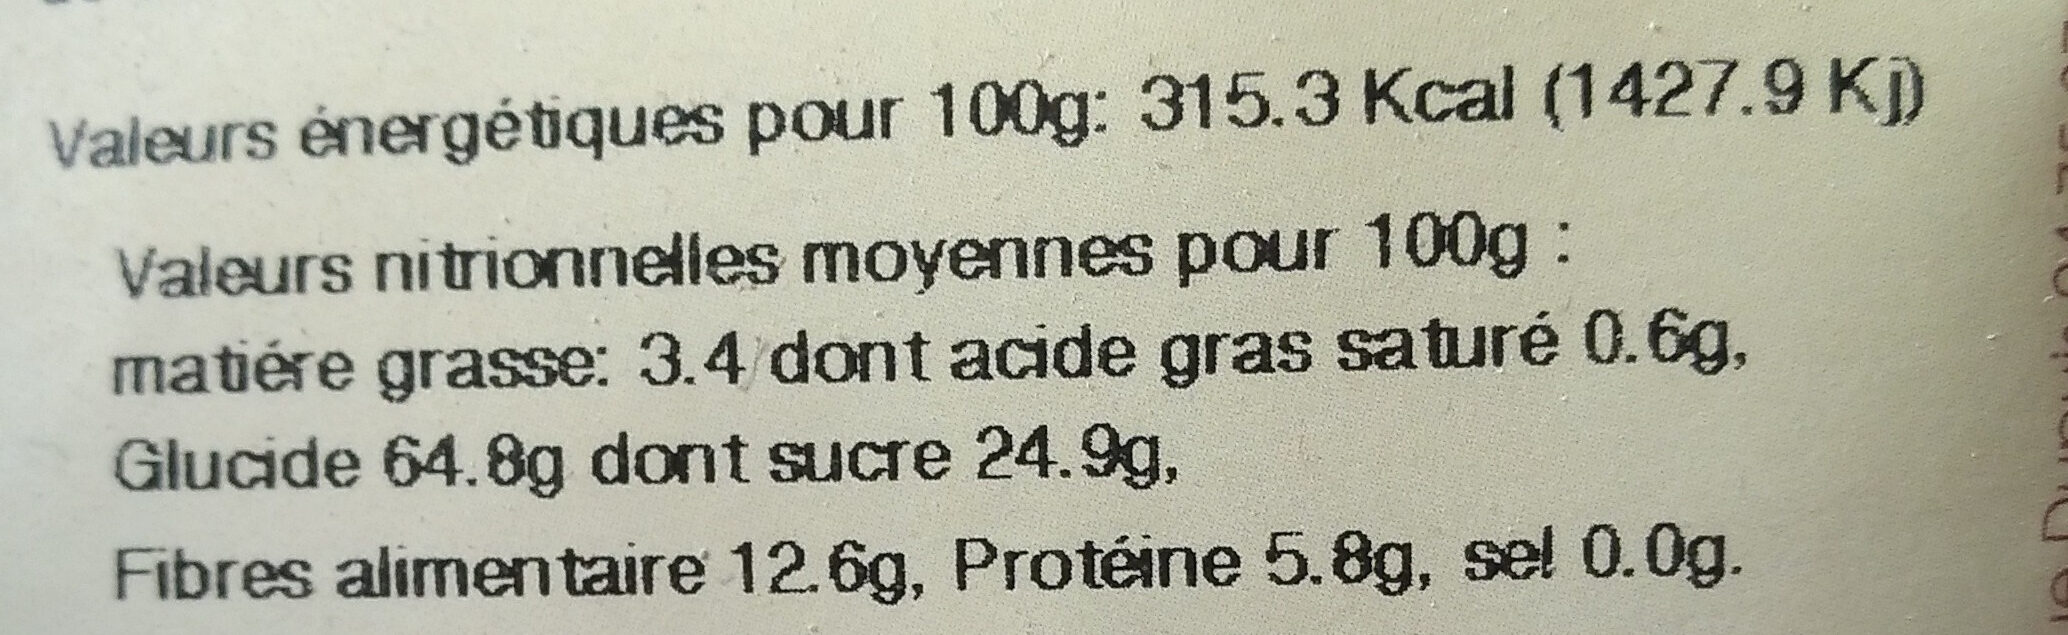 Farine de châtaigne - Nutrition facts - fr